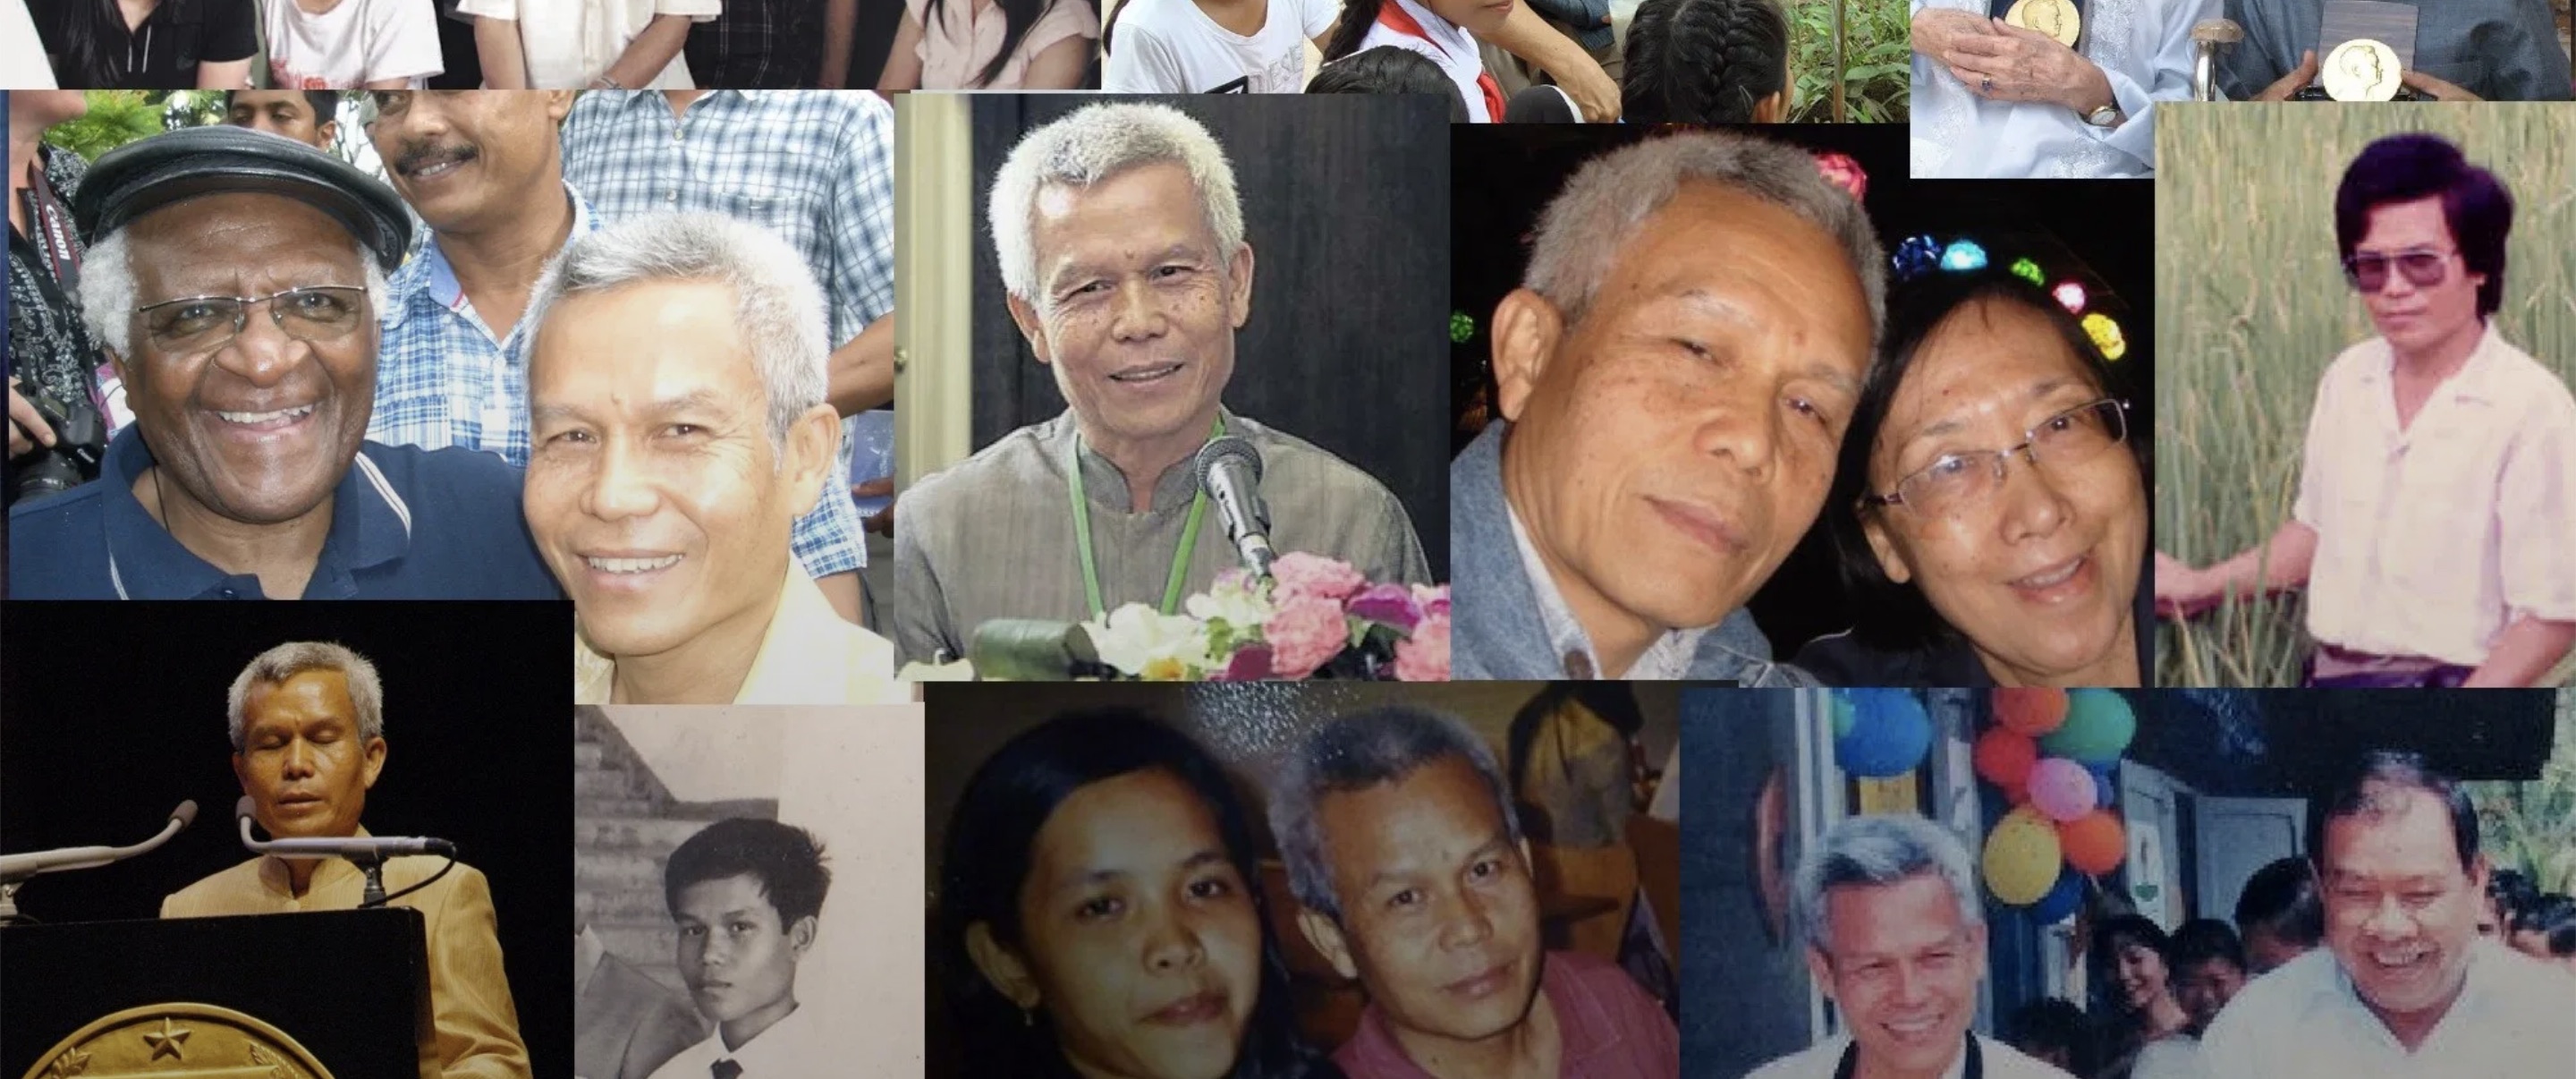 88 องค์กรส่งจดหมายถึงรัฐบาลลาวและไทยในวาระครบรอบ 7 ปีการหายตัวไปของสมบัด สมพอน